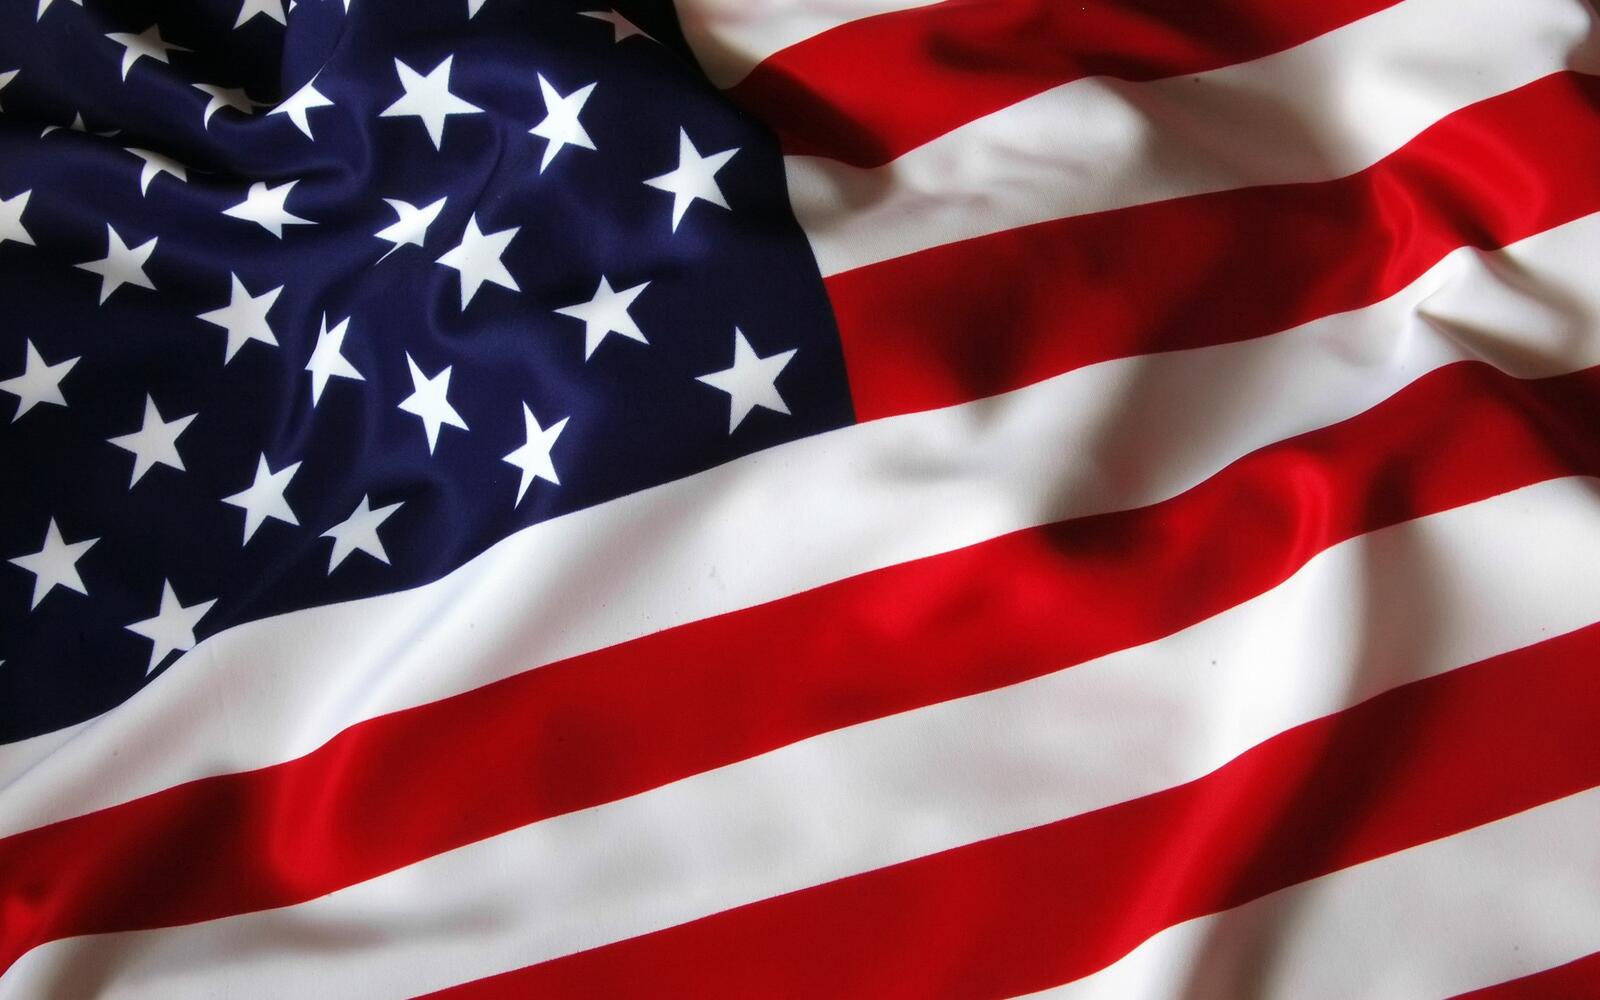 Бесплатное фото Американский флаг